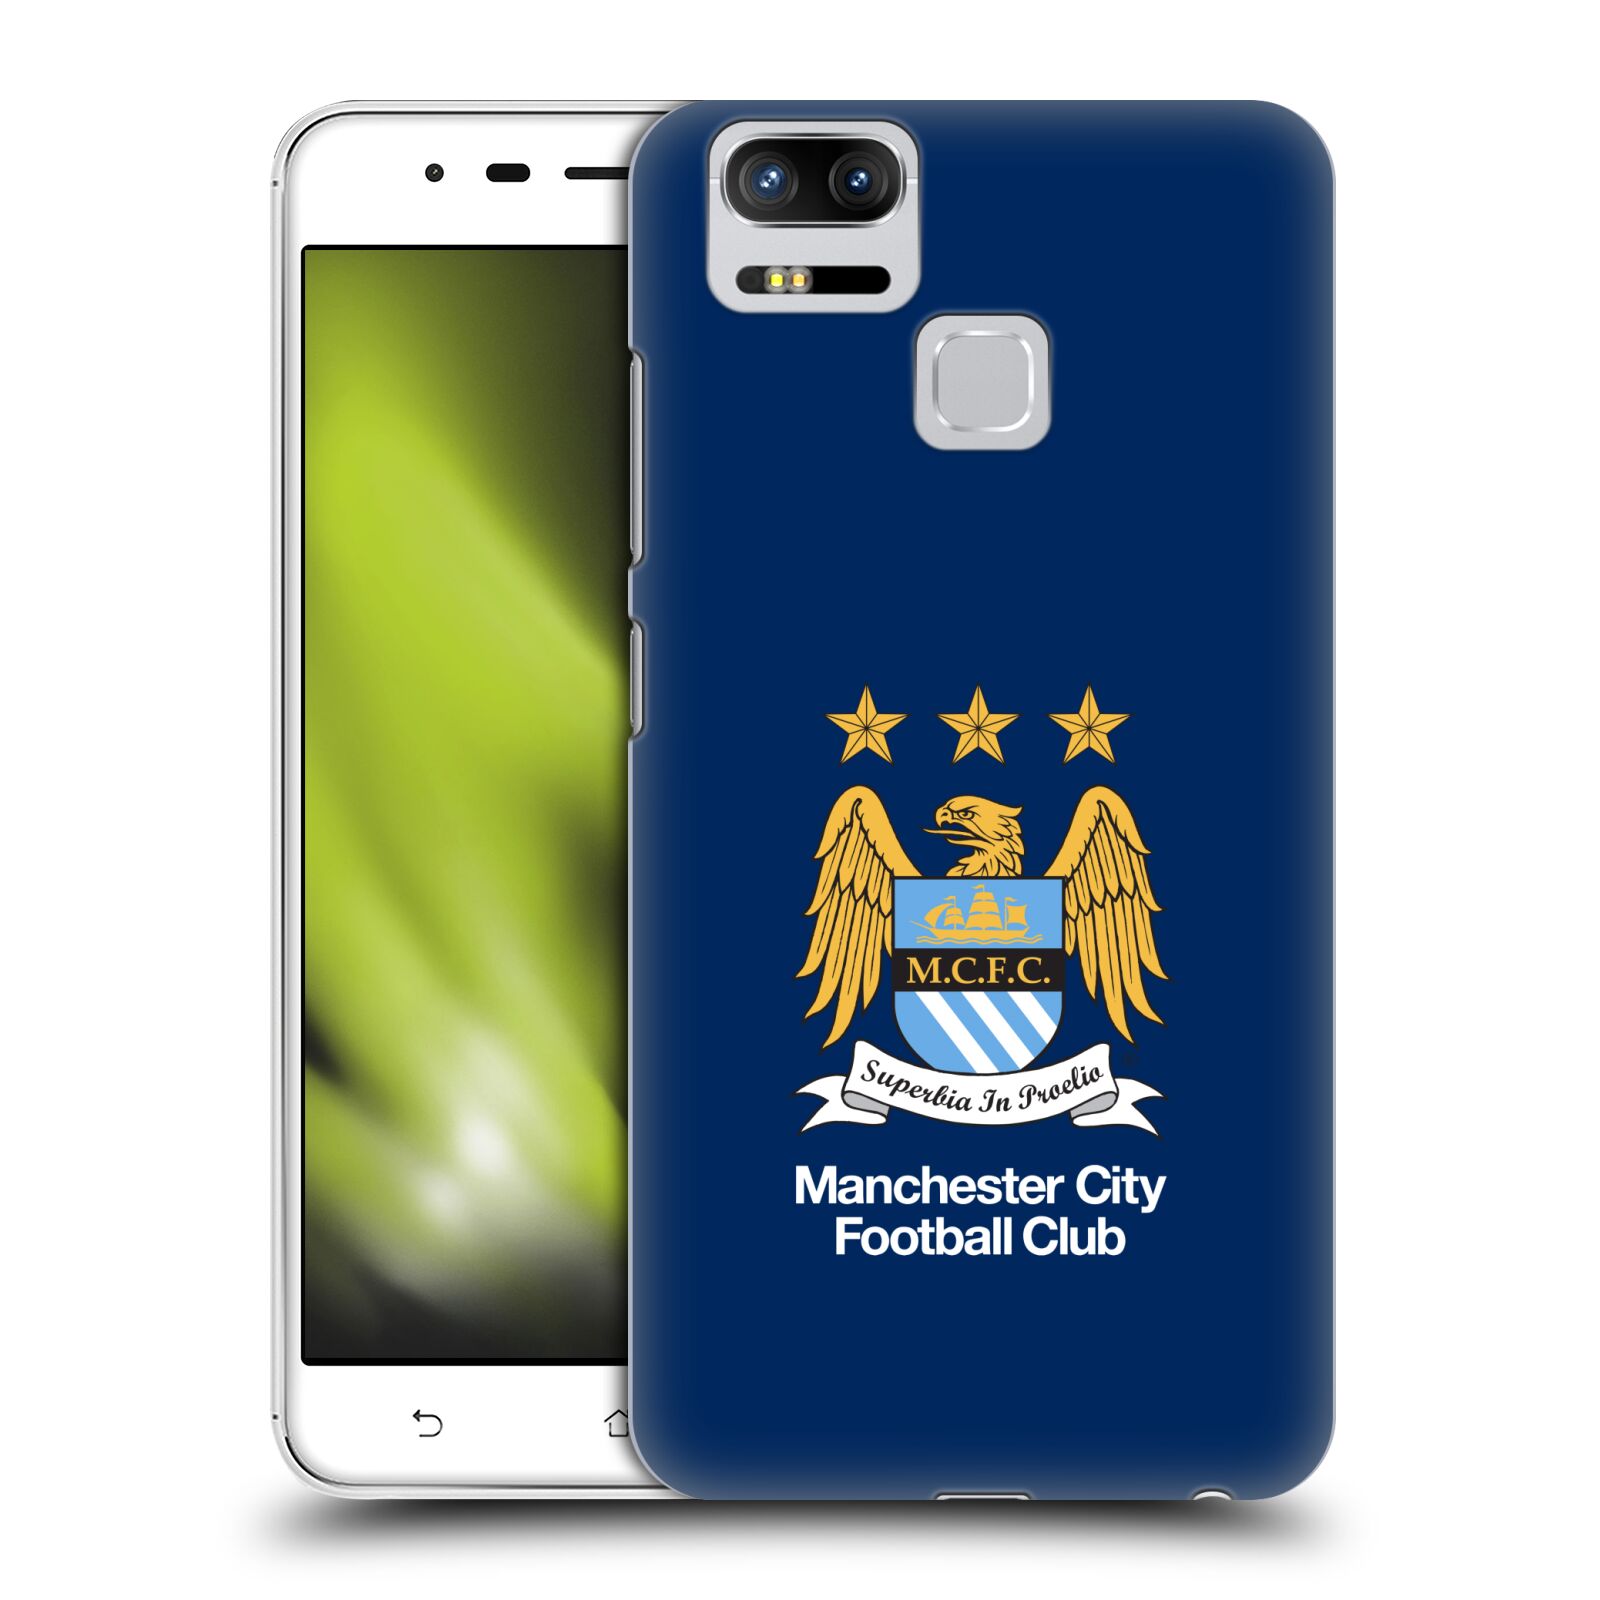 HEAD CASE plastový obal na mobil Asus Zenfone 3 Zoom ZE553KL Fotbalový klub Manchester City modré pozadí velký znak